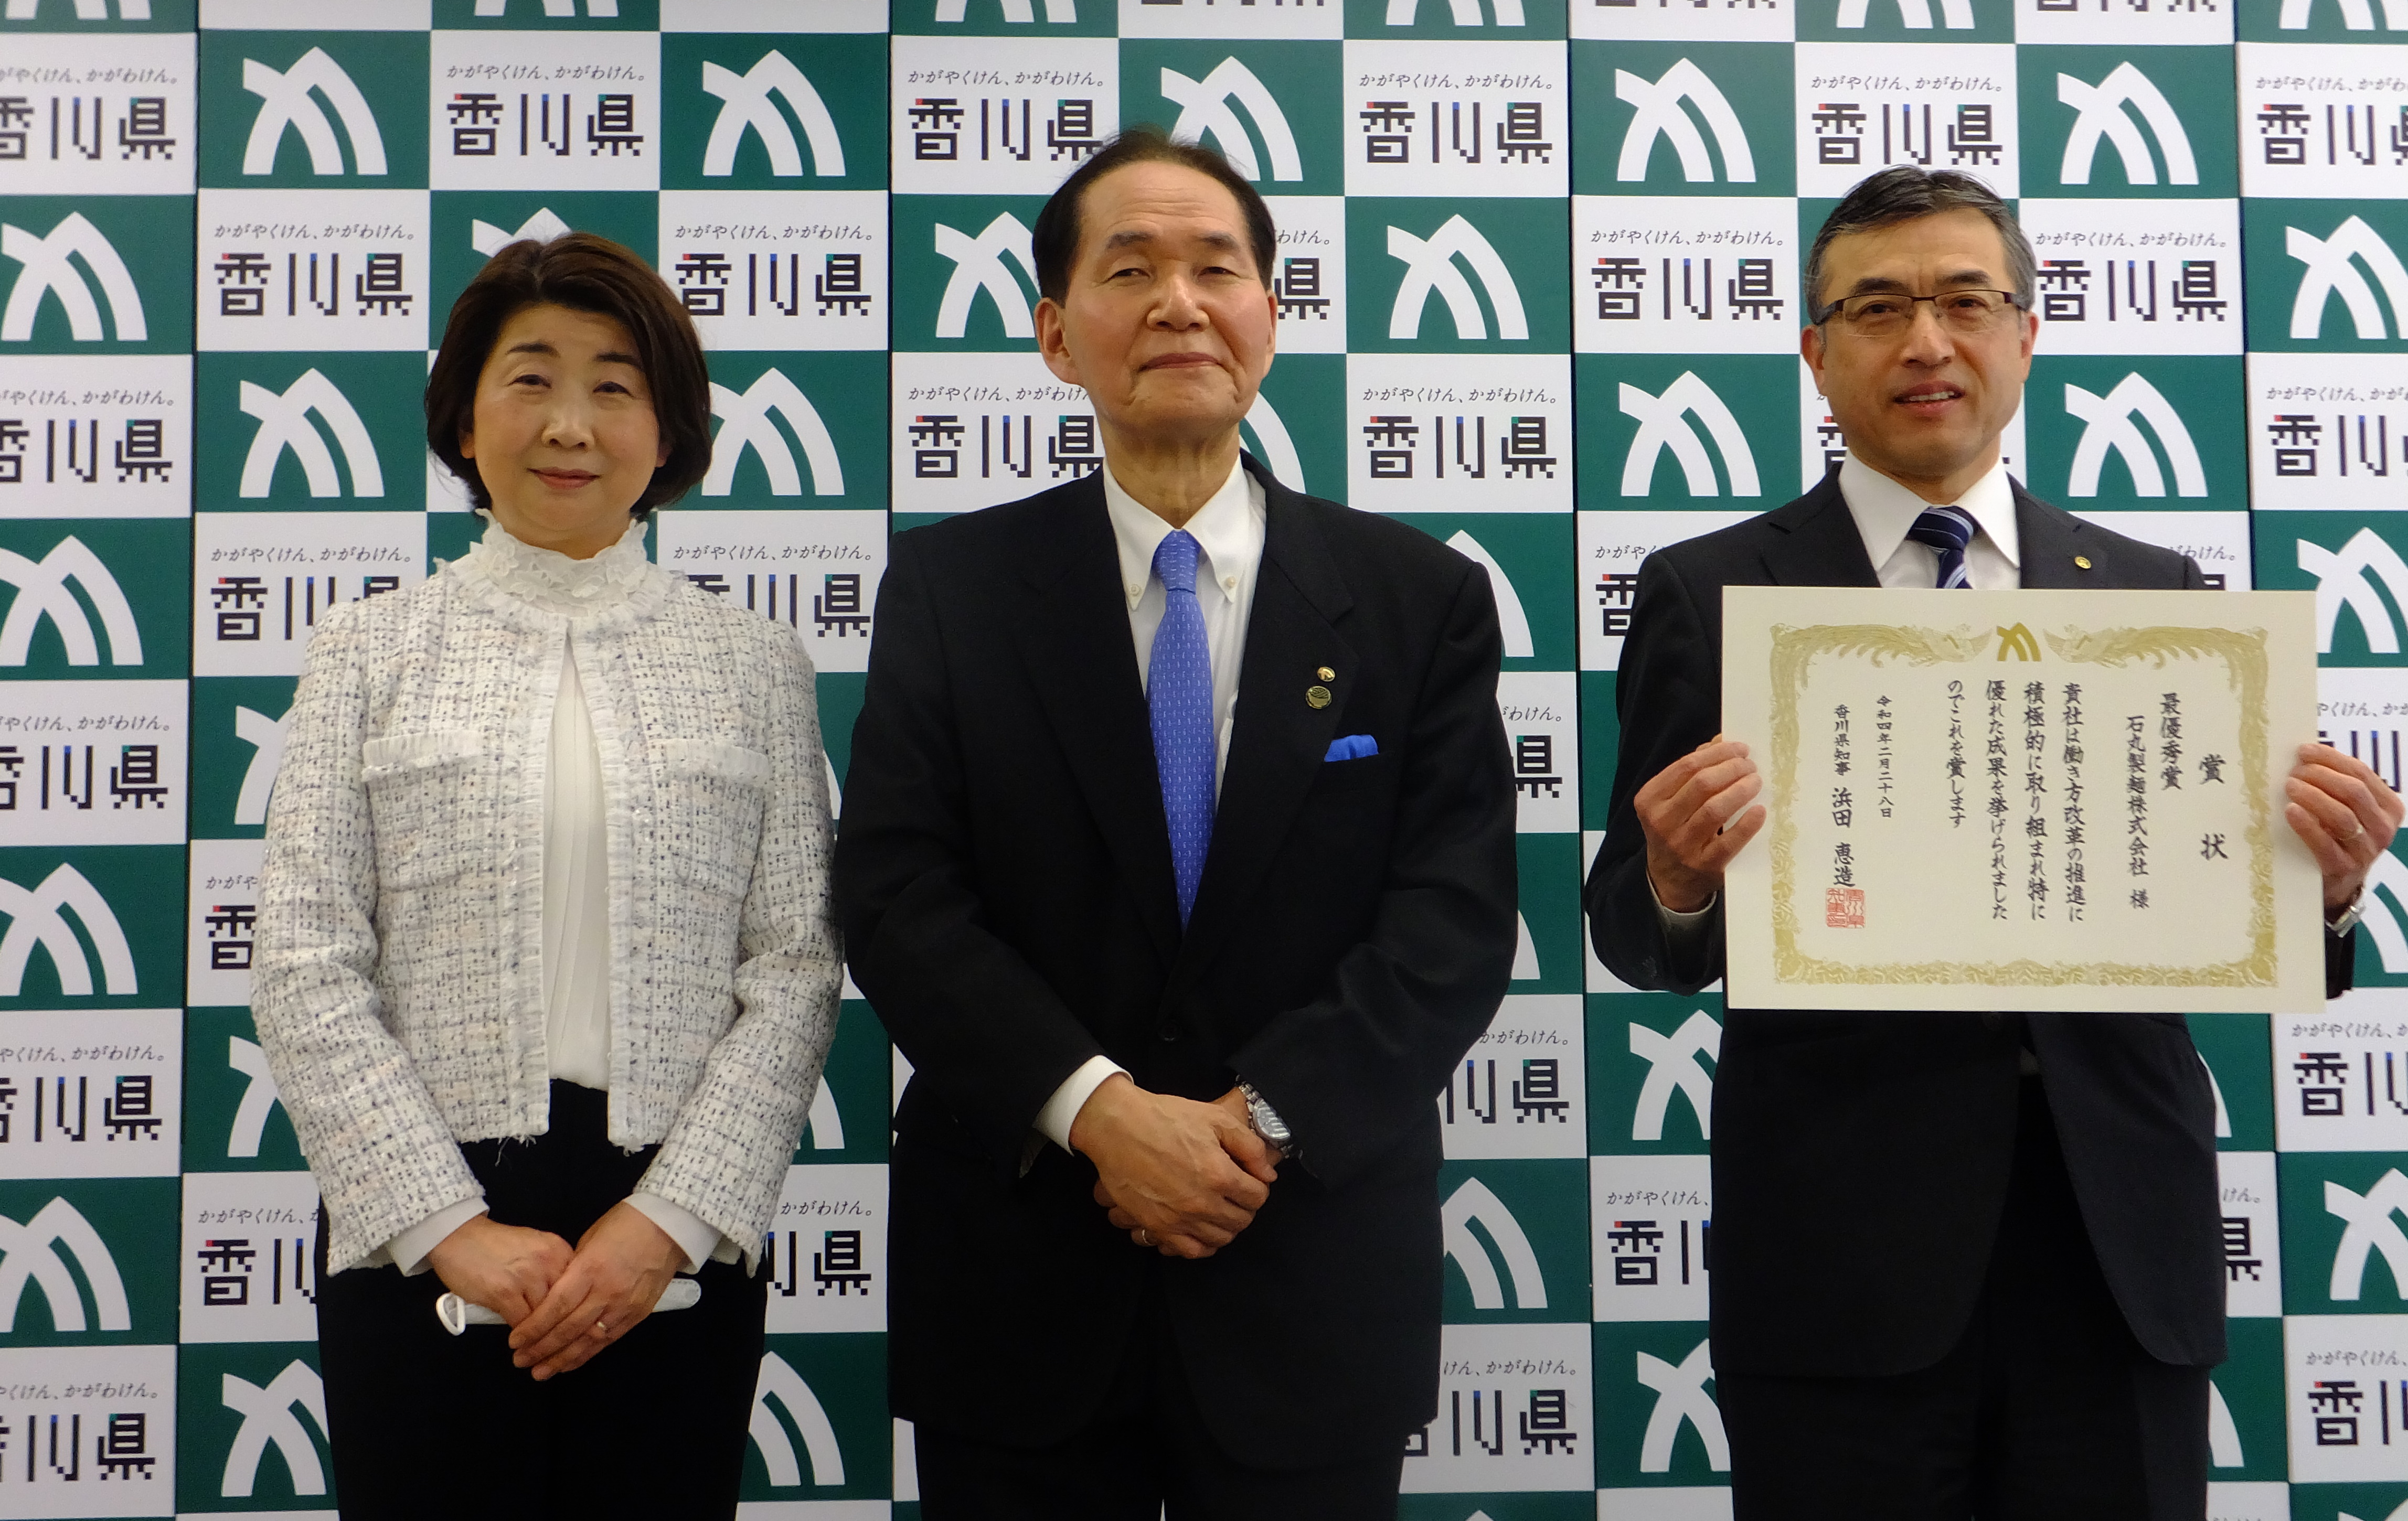 石丸製麺株式会社の表彰式の様子